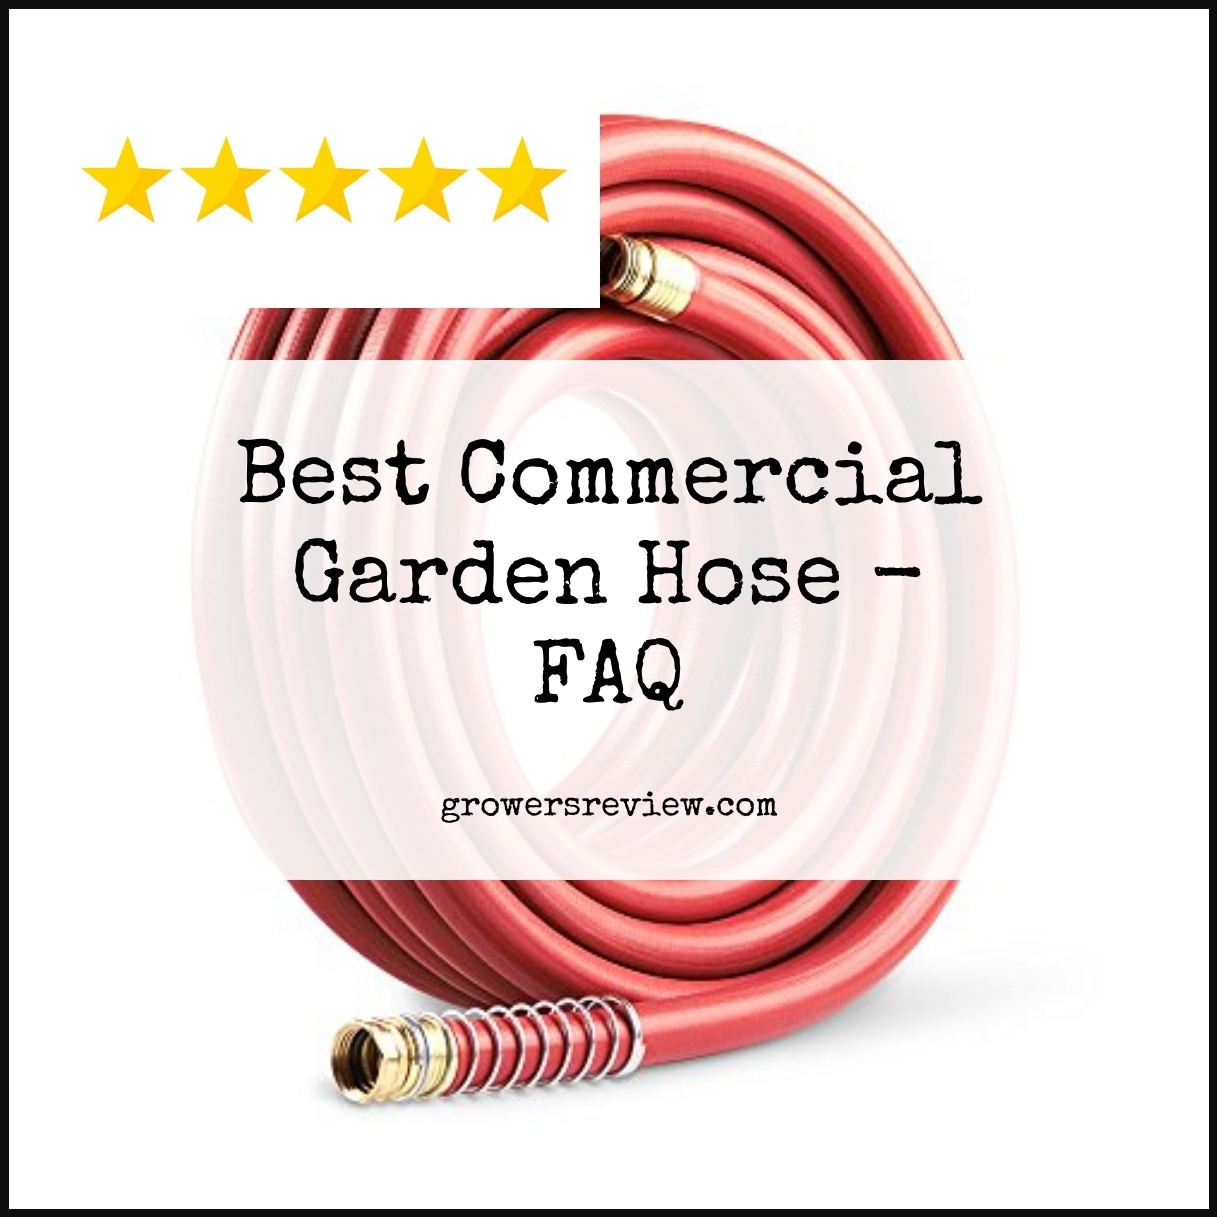 Best Commercial Garden Hose - FAQ